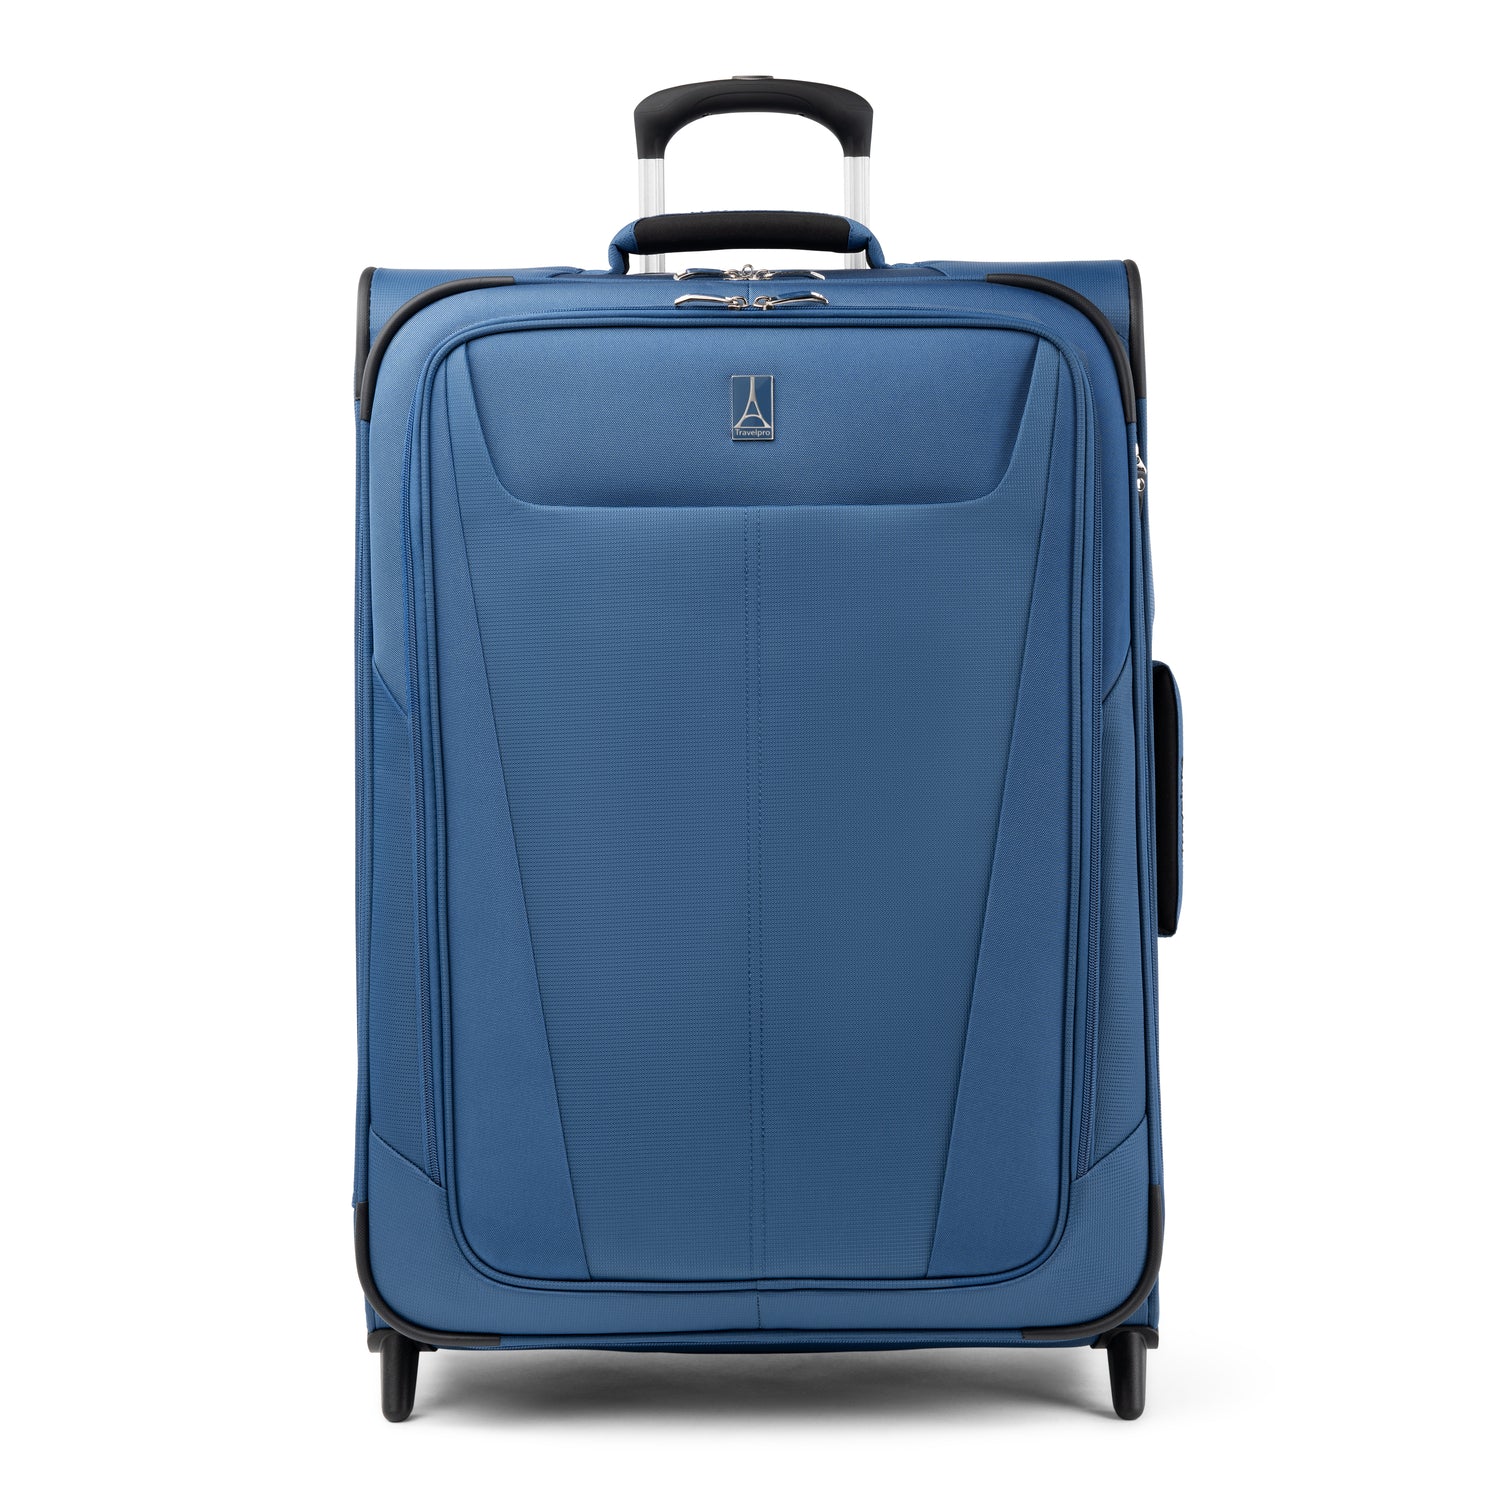 Travel Luggage, Suitcase Sets, Weekenders & More